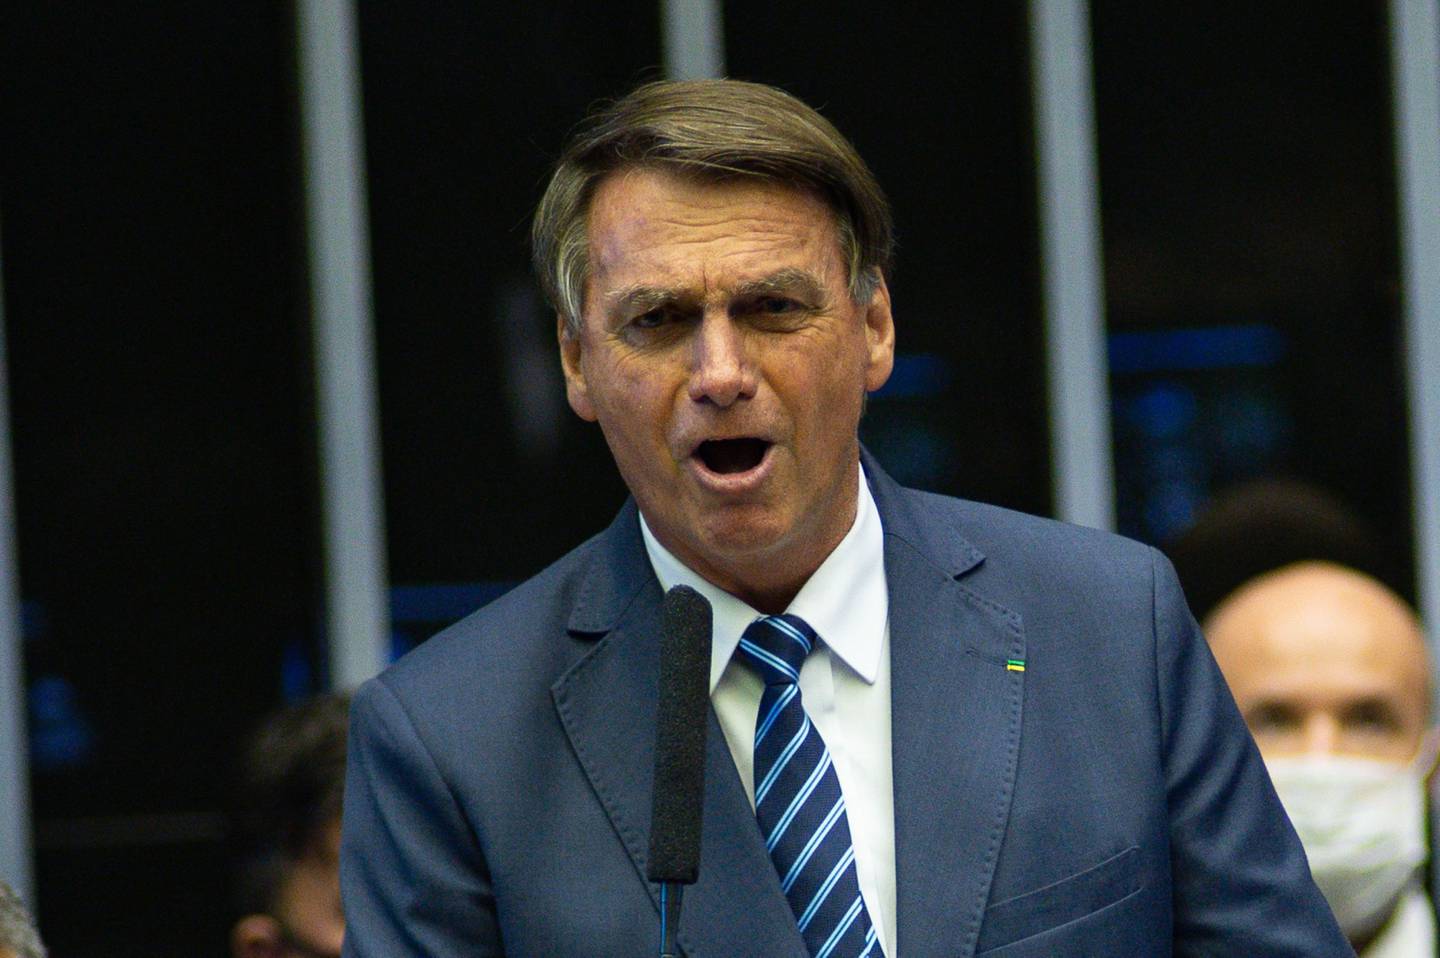 El  presidente de Brasil, durante una sesión en el Congreso Nacional de Brasil en Brasilia, Brasil, el miércoles 2 de febrero de 2022. dfd